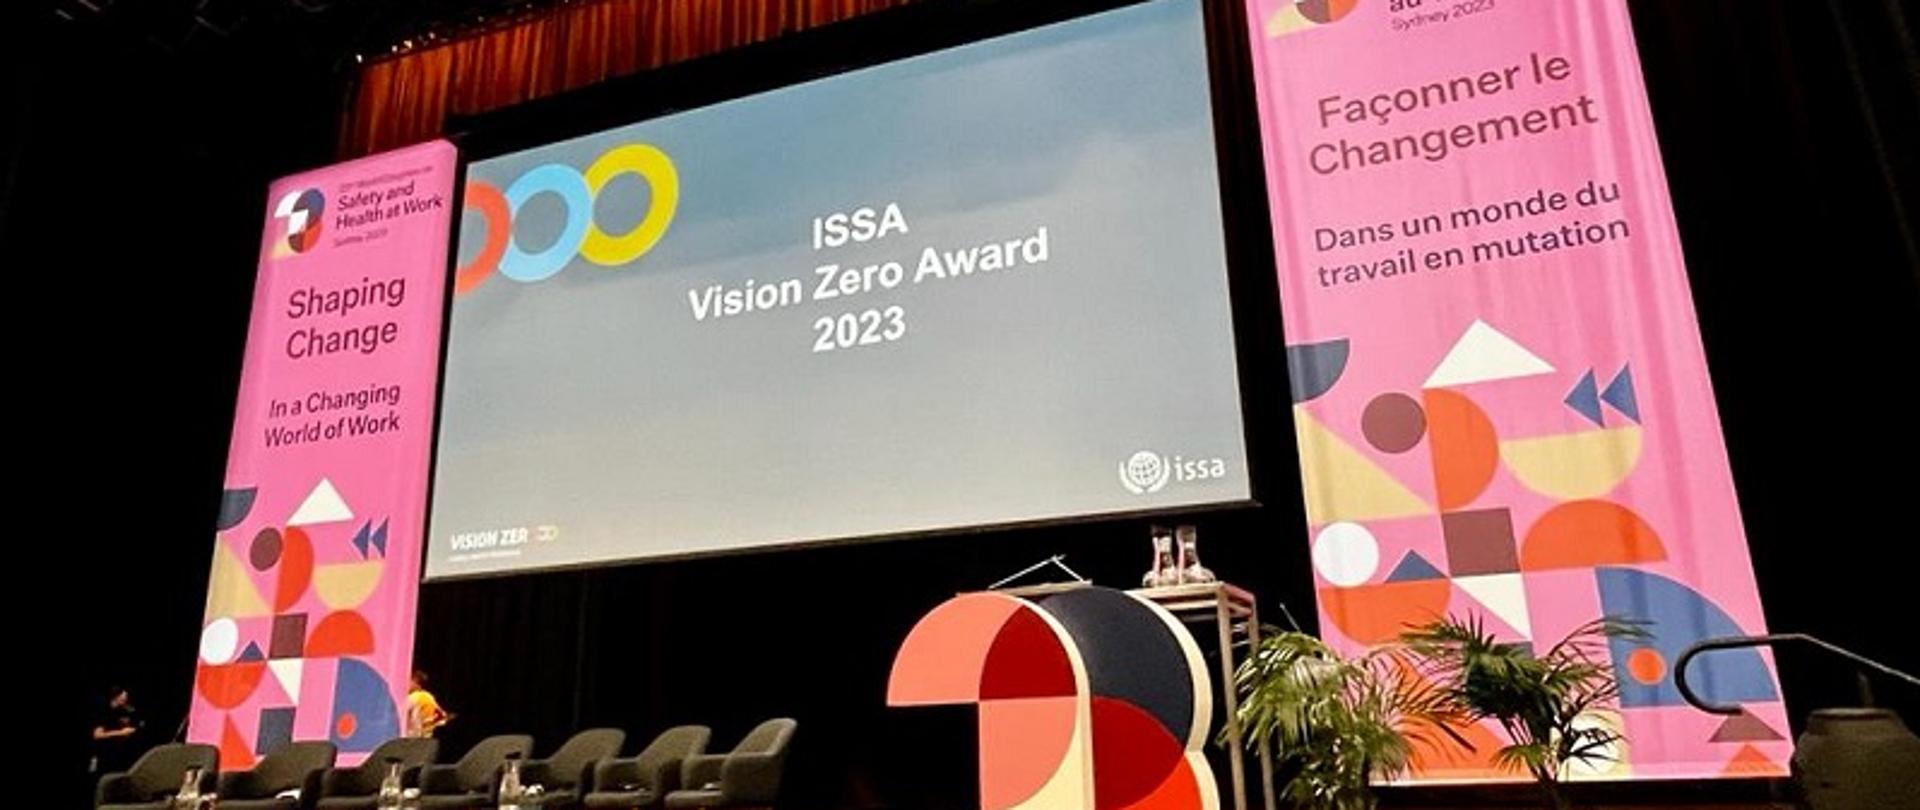 Scena z ekranem z informacją o nagrodzie ISSA Vision Zero Award 2023